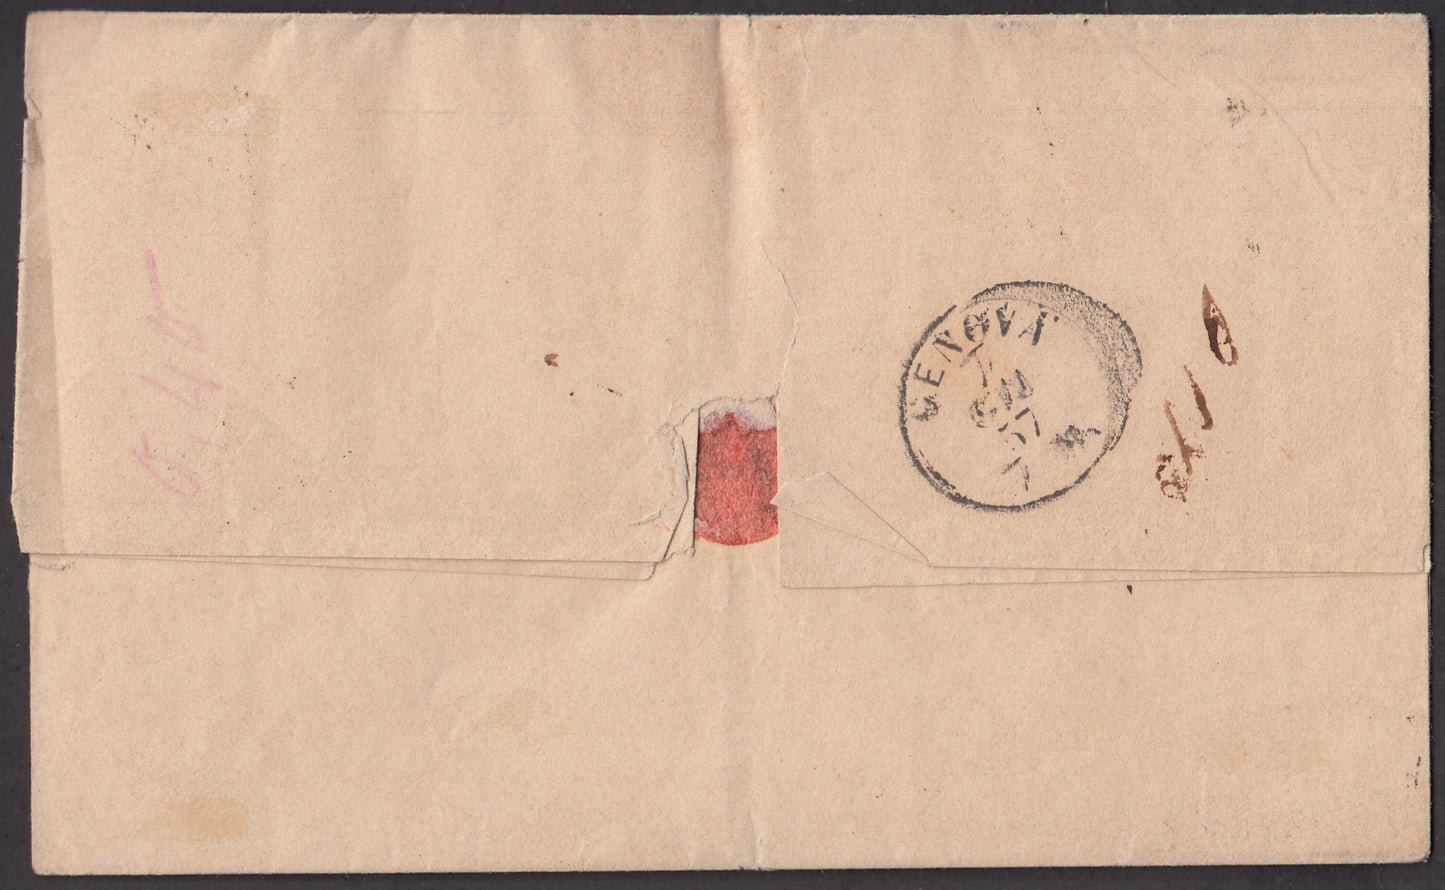 BA23-159 1857 - Carta enviada desde Bolonia a Génova el 6/5/57 franqueada con 2 baj verde amarillento dos ejemplares + 8 baj blancos (3º + 9)